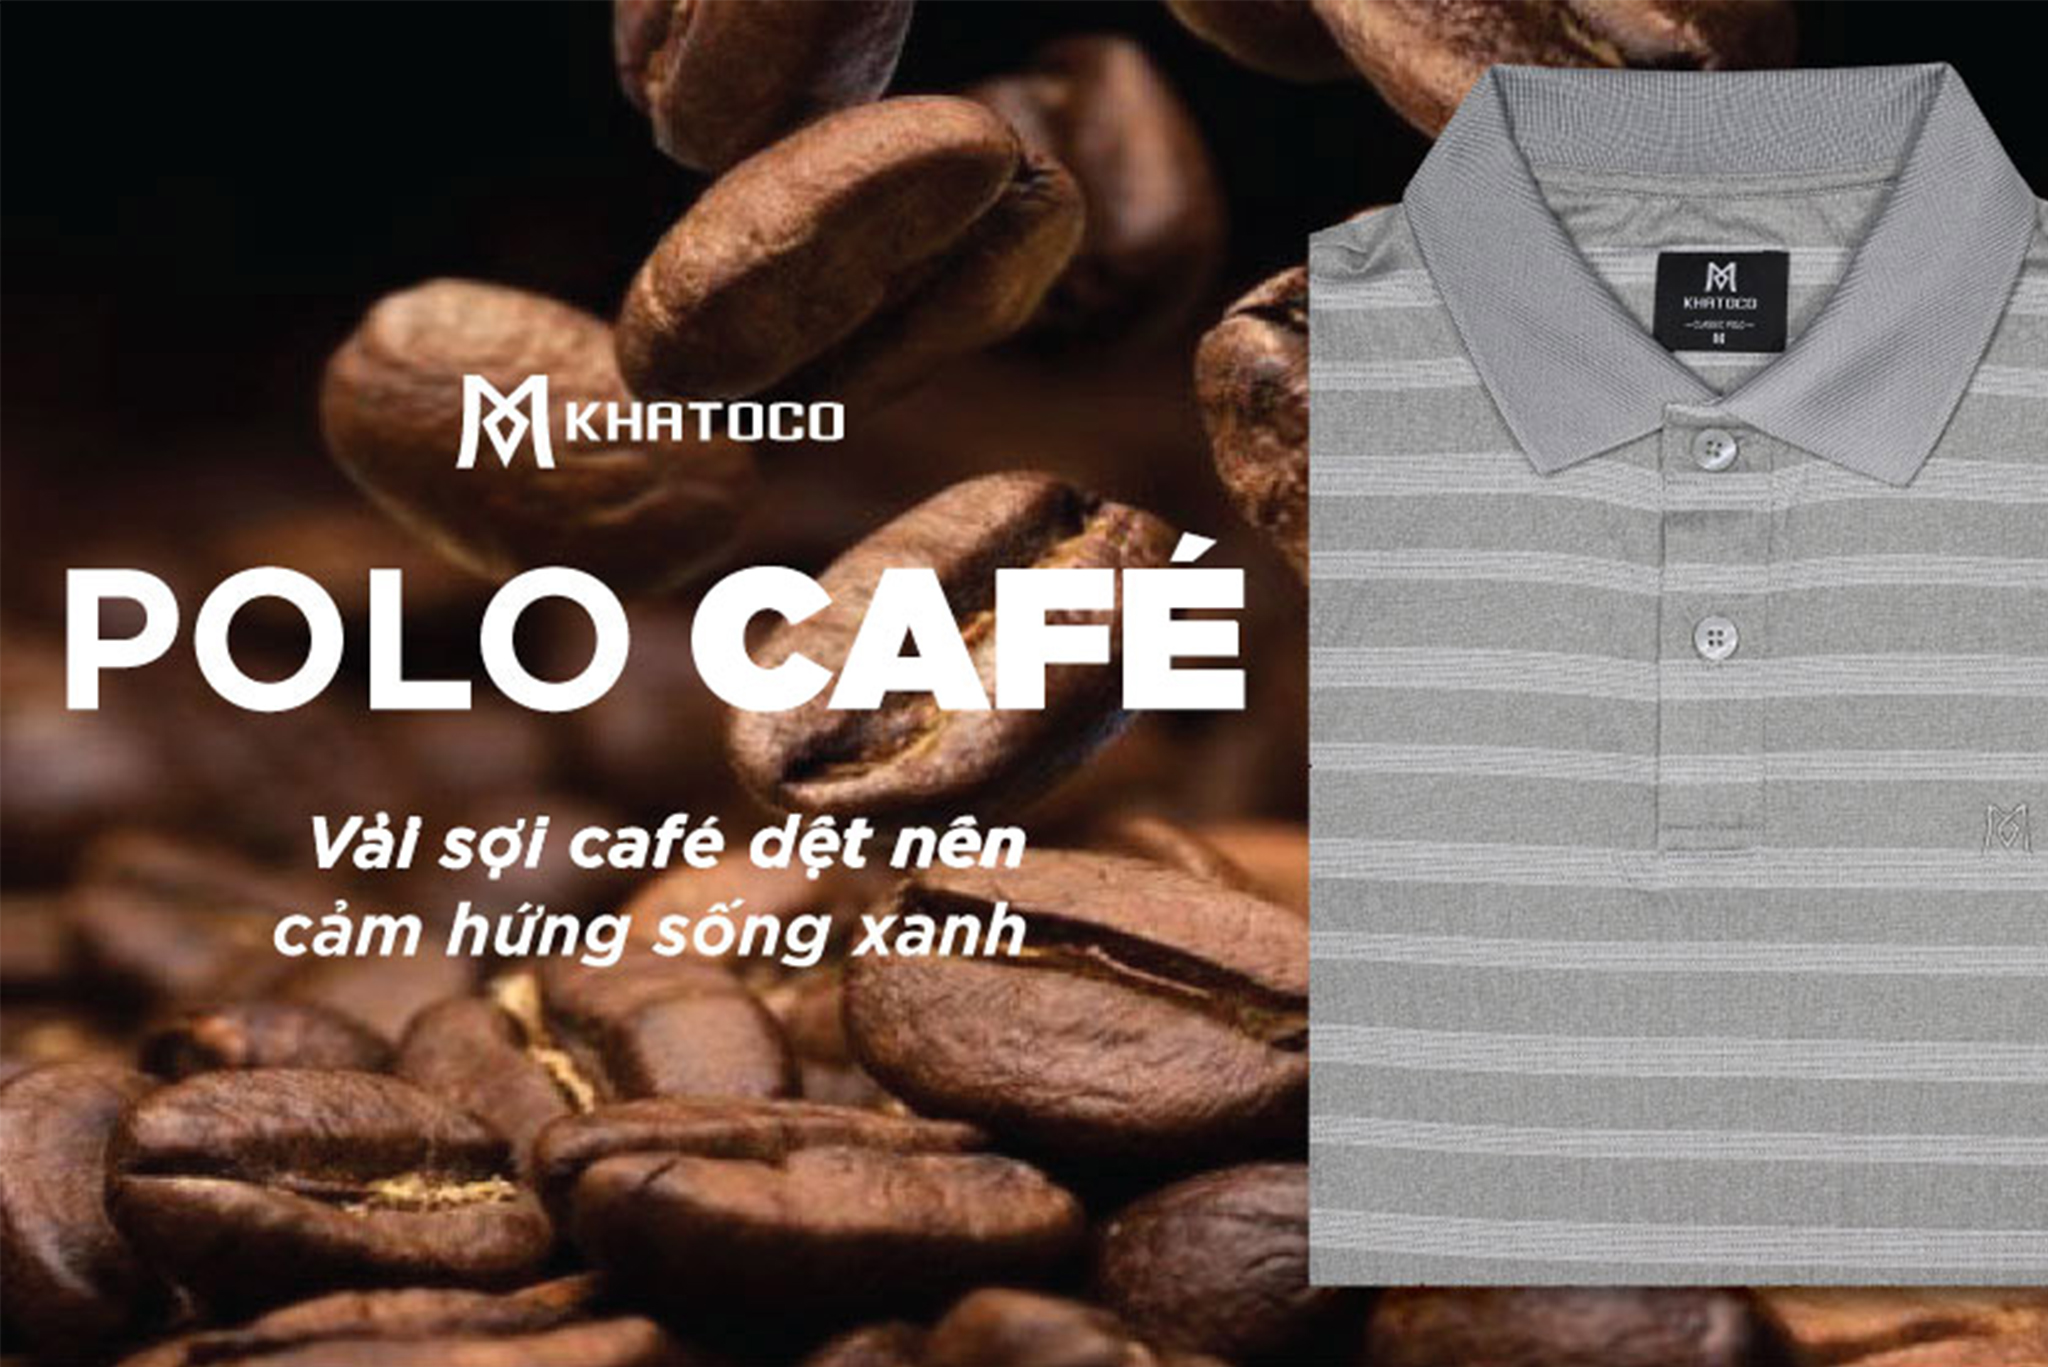 Polo cafe từ vải sợi cafe dệt nên cảm hứng sống xanh